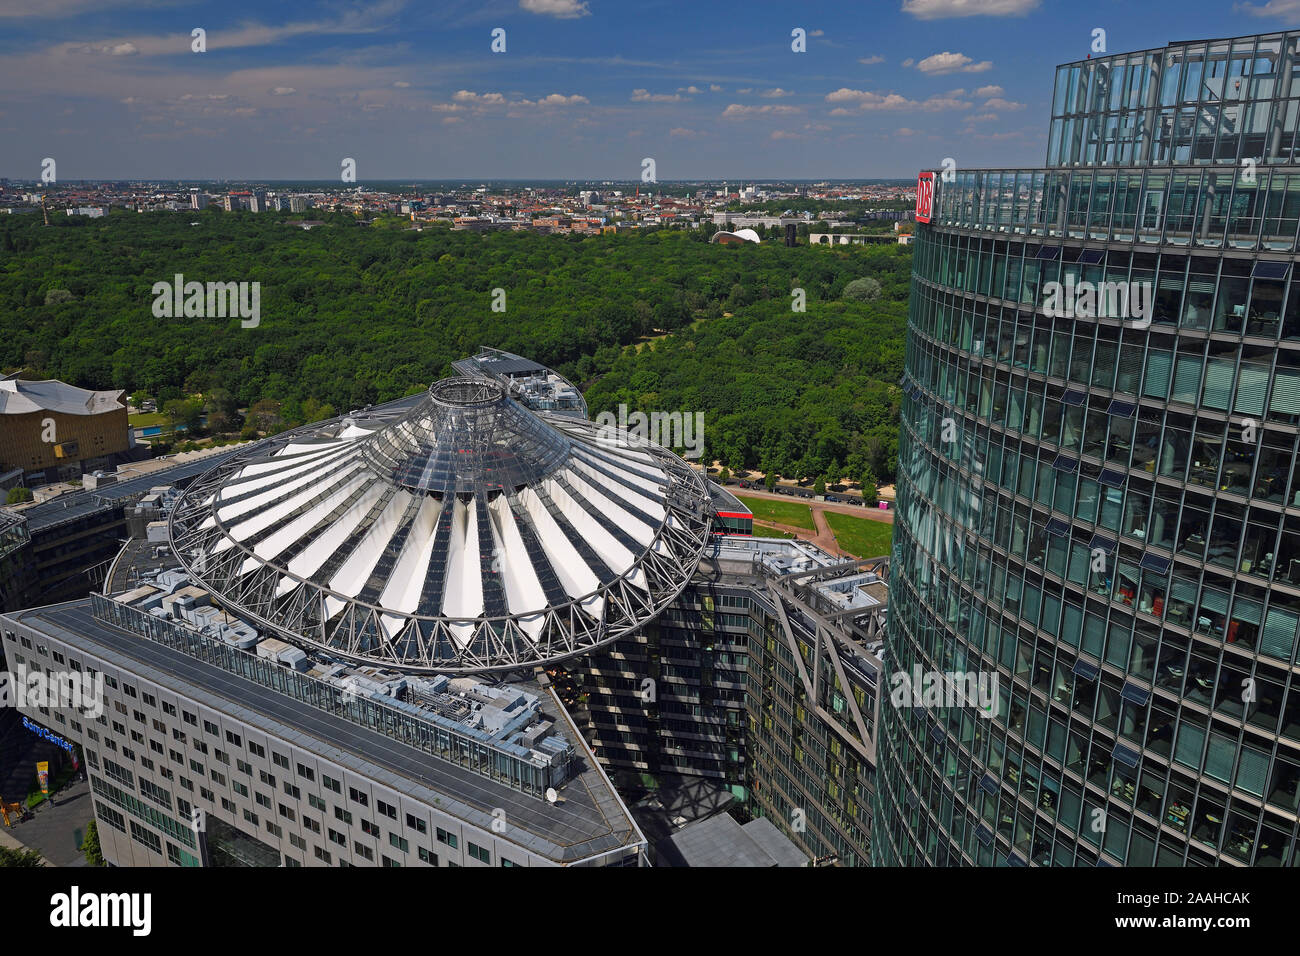 Dach des Sony Centers und Bahn Tower am Potsdamer Platz, Berlin, Tiergarten, Deutschland Stock Photo